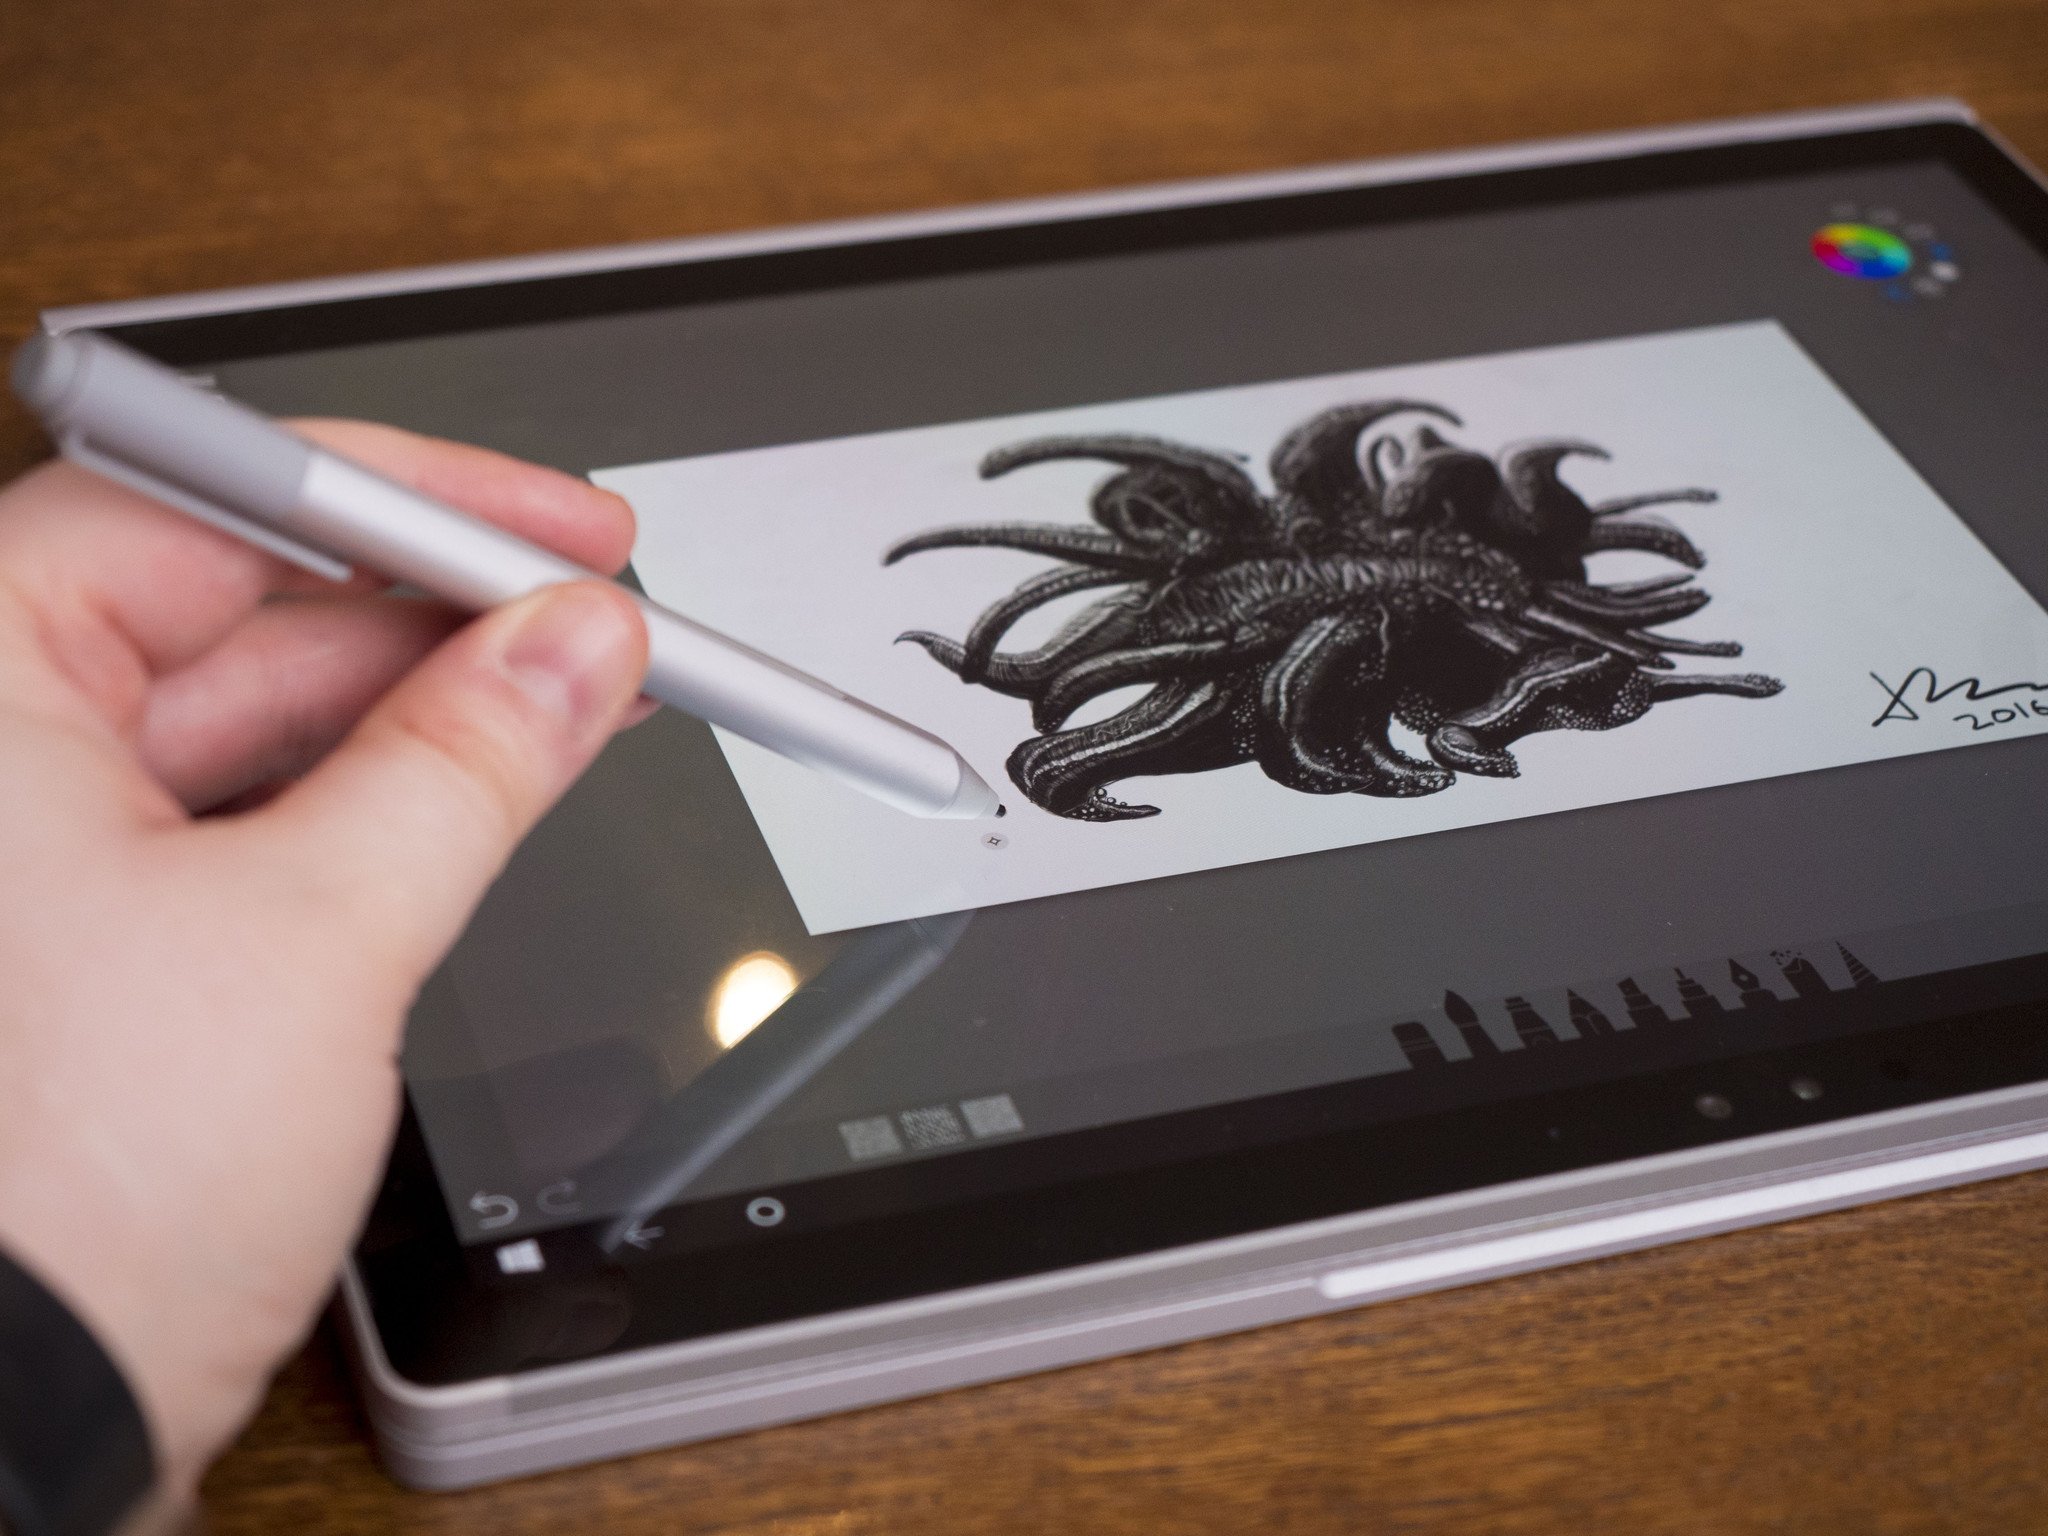 Xp pen draw. Стилус-карандаш surface Pro 3. Microsoft surface go 1 мышка и стилус. Microsoft surface Pro 9 Forest стилус. Электронная книга с возможностью рисования.